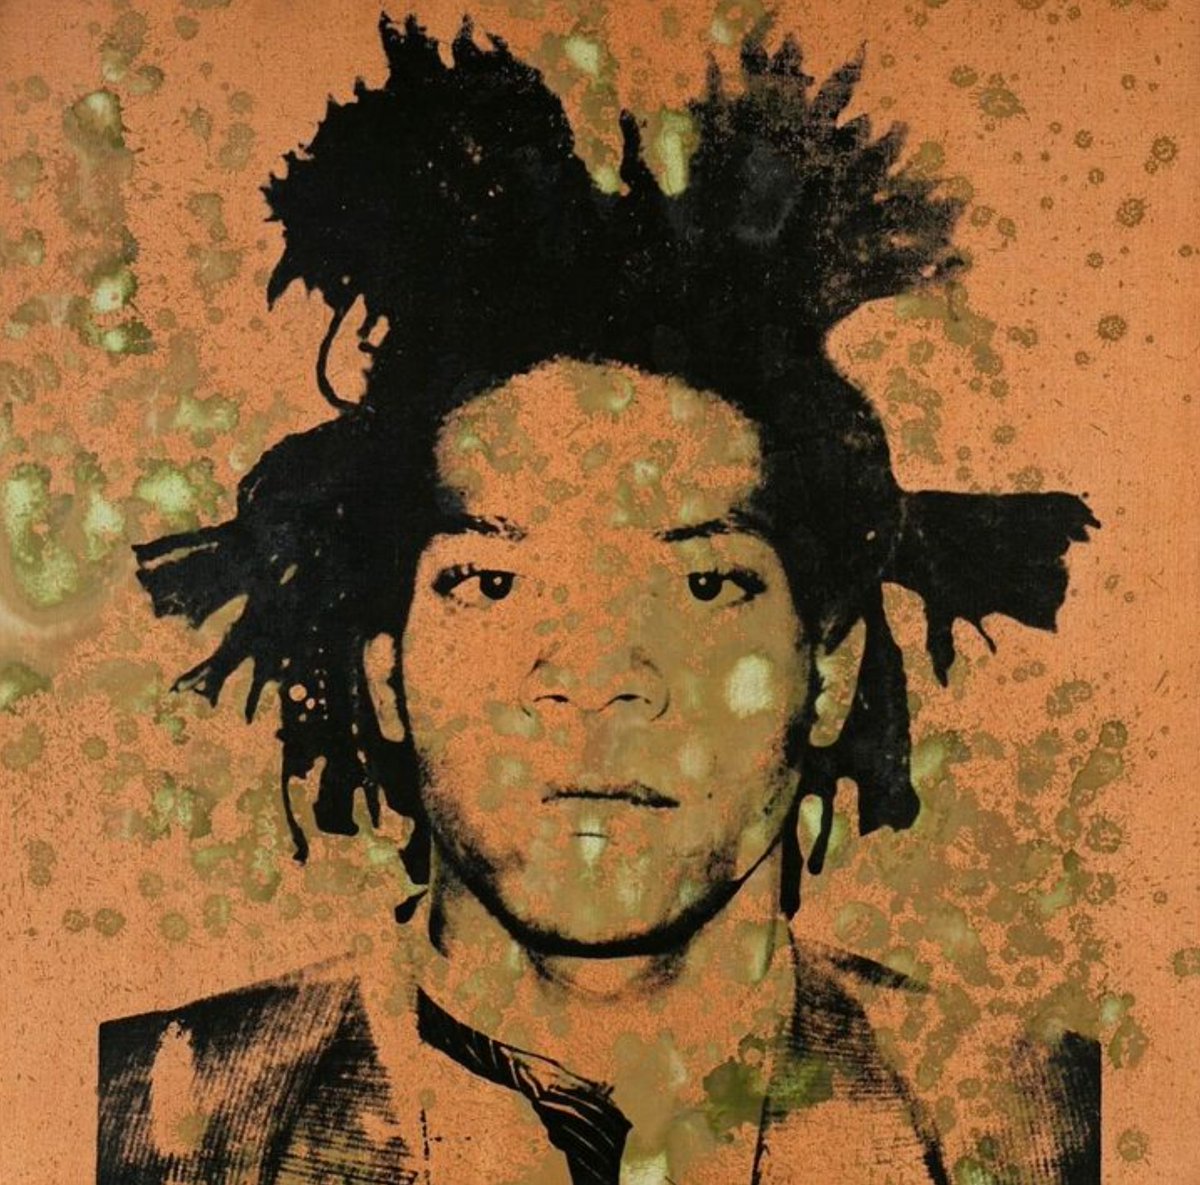 Portrait of Jean-Michel Basquiat by Andy Warhol

#andywarhol #warhol #basquiat #jeanmichelbasquiat #basquiatart #basquaitcrown #basquiat_fans #basquiatarchive #warholarchive